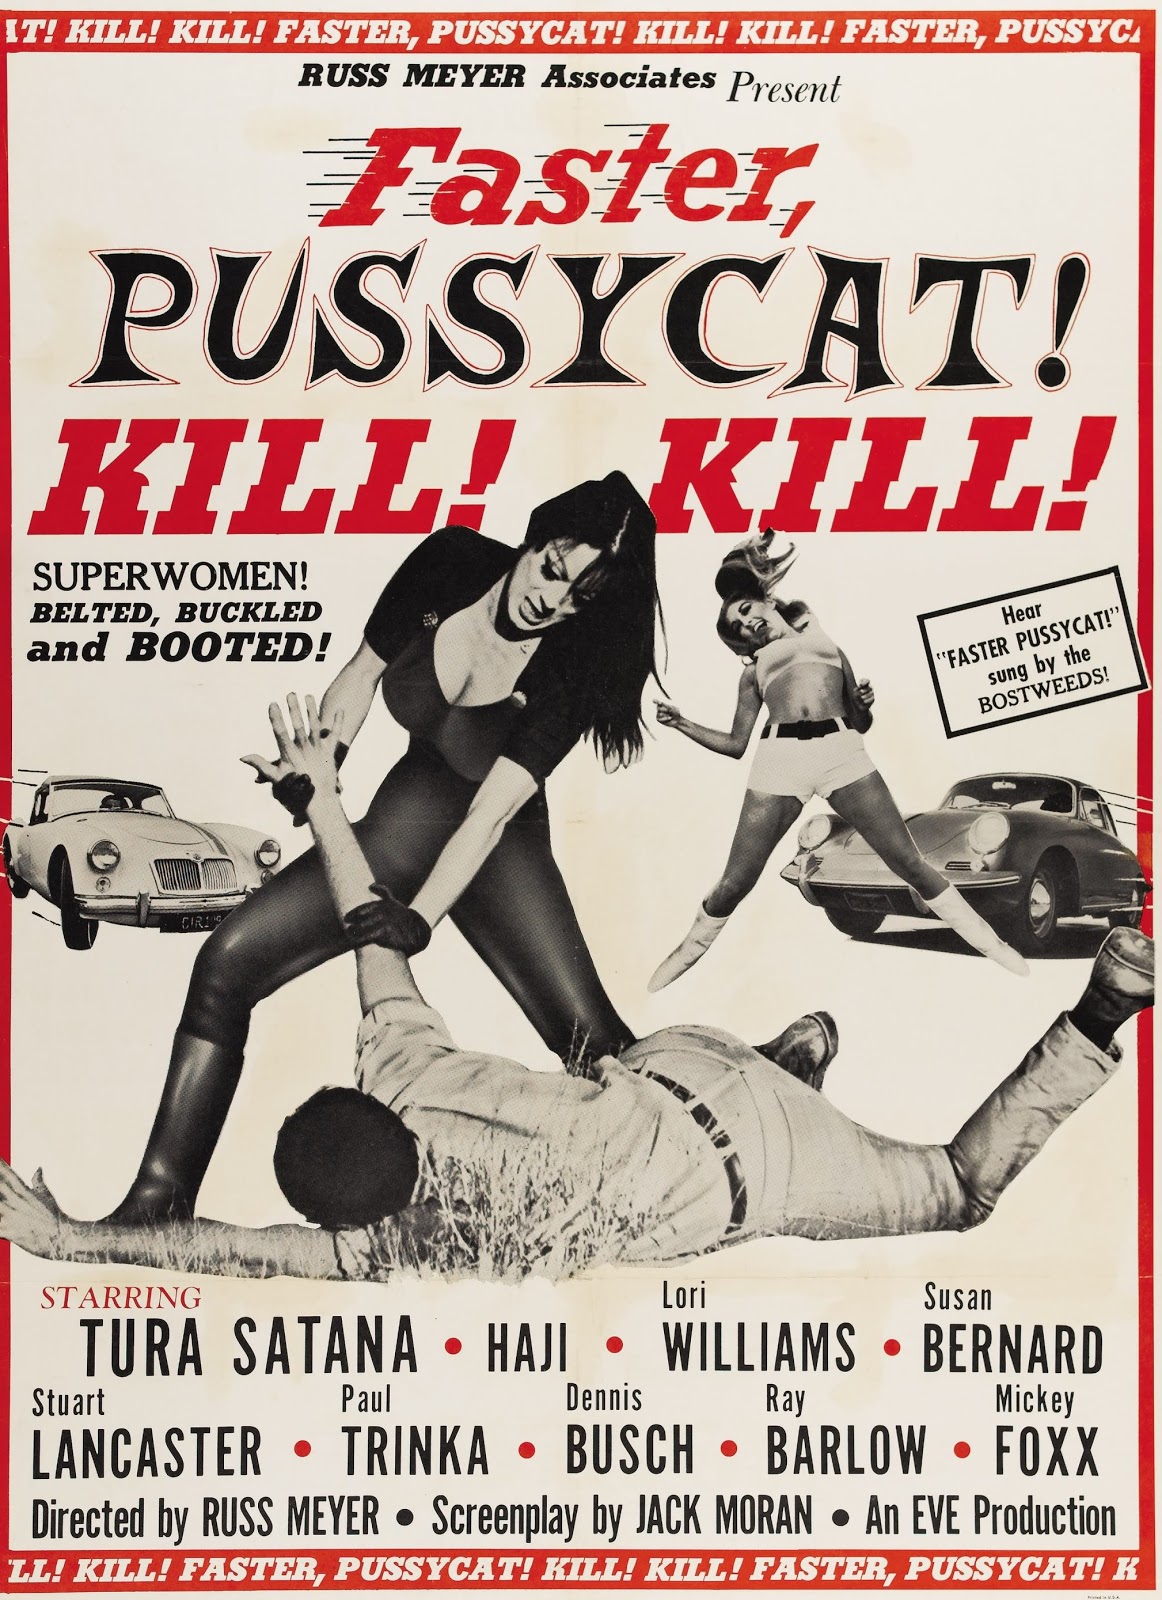 faster_pussycat_kill_kill_poster_03.jpg